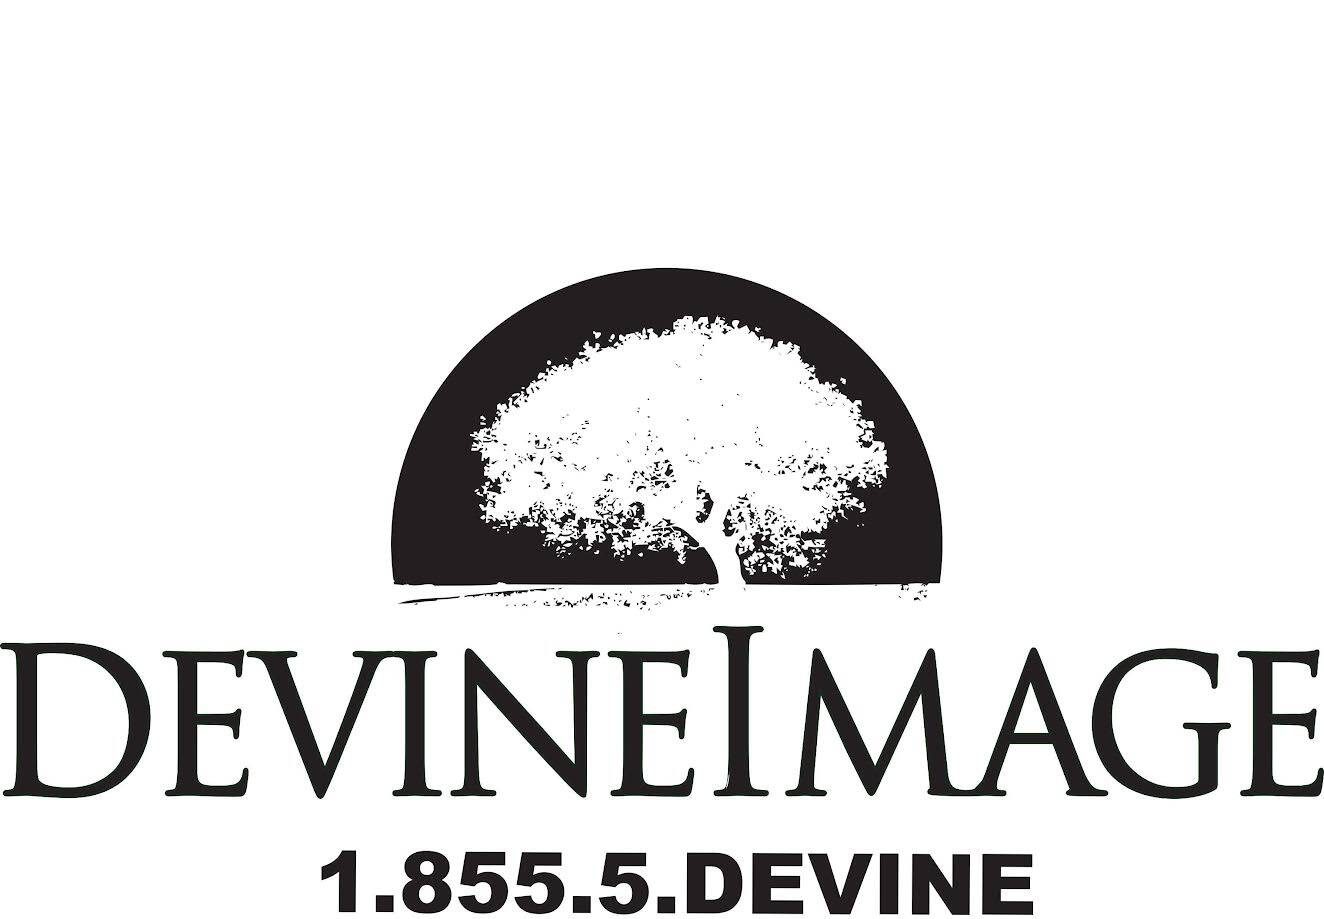 Devine Image Landscaping